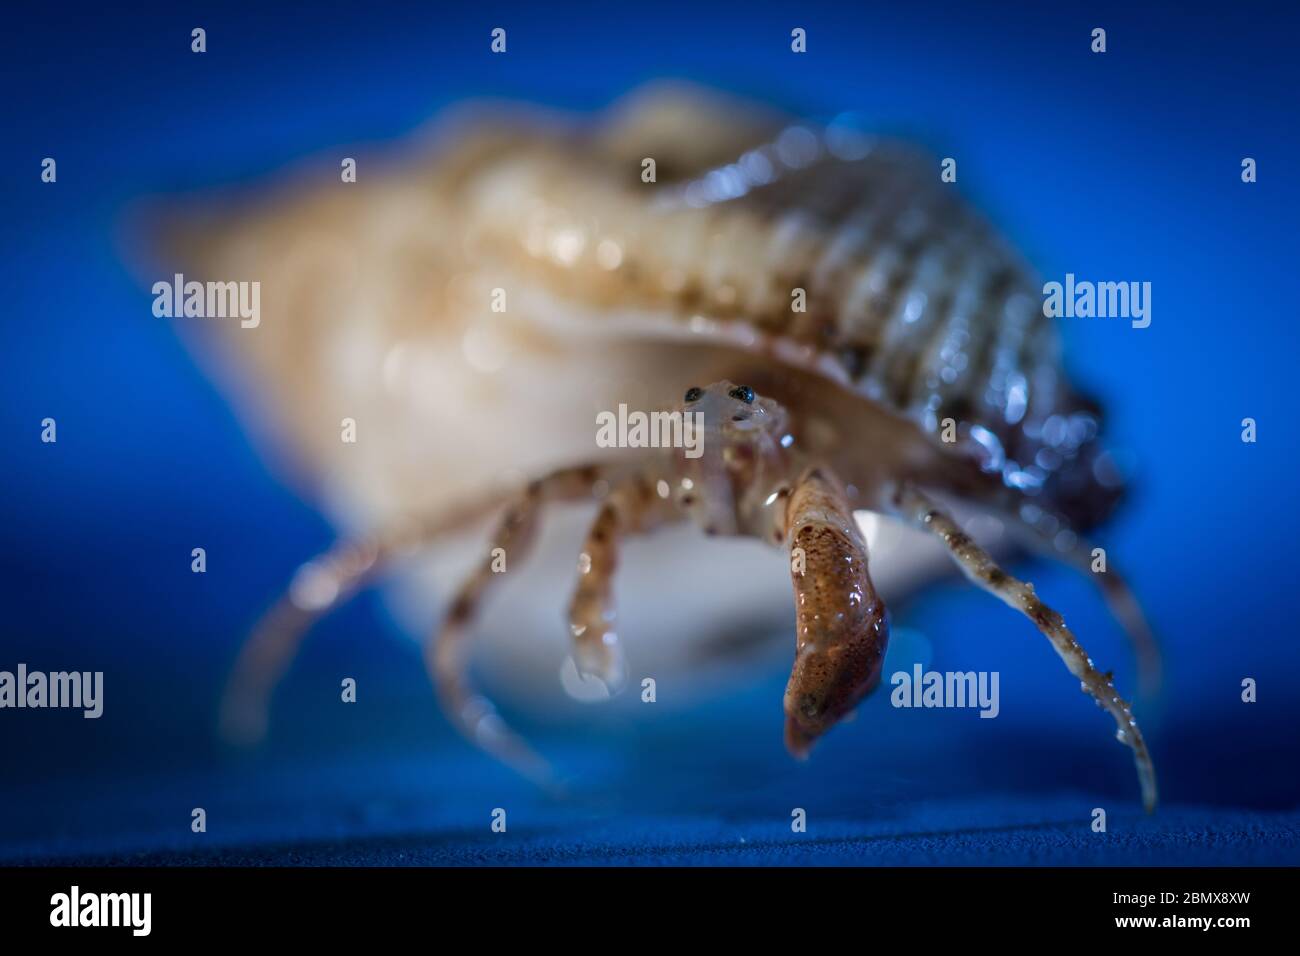 Los cangrejos ermitaños habitan una concha de molusco, como estos especímenes recolectados por científicos que hacen muestreo bentónico del fondo marino del Océano Índico. Foto de stock